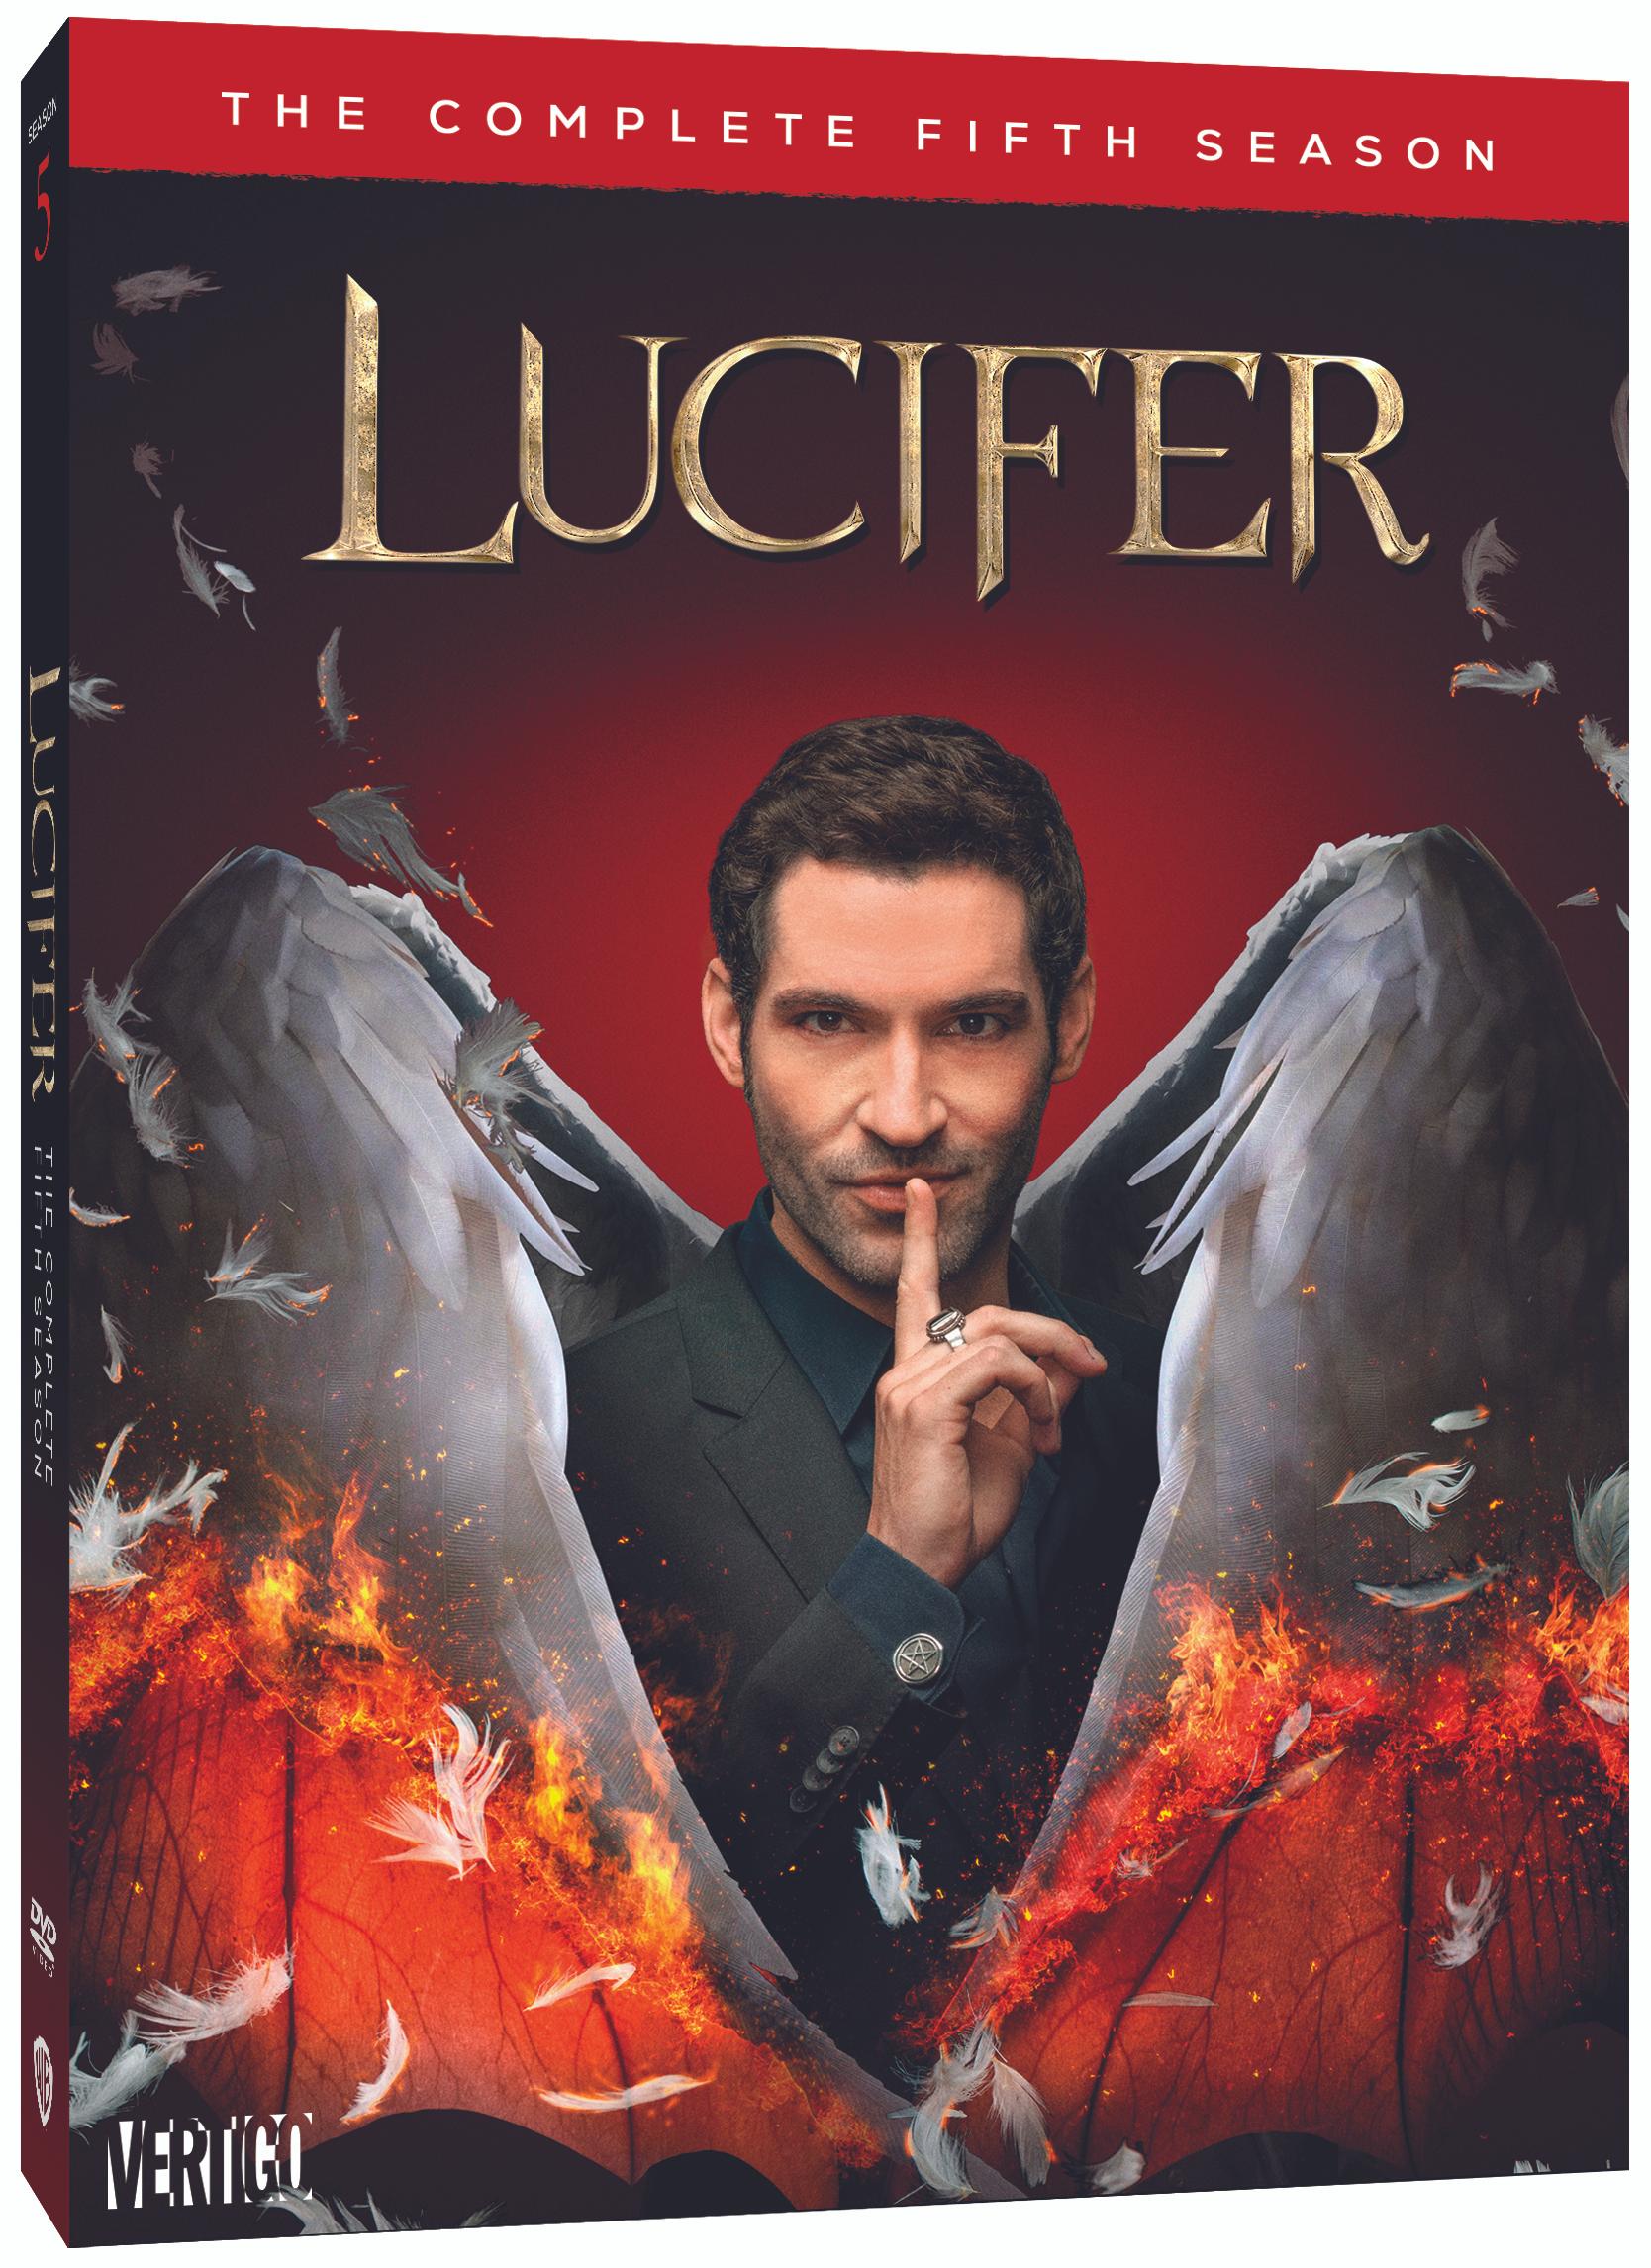 Lucifer Season 5 Blu-ray Review